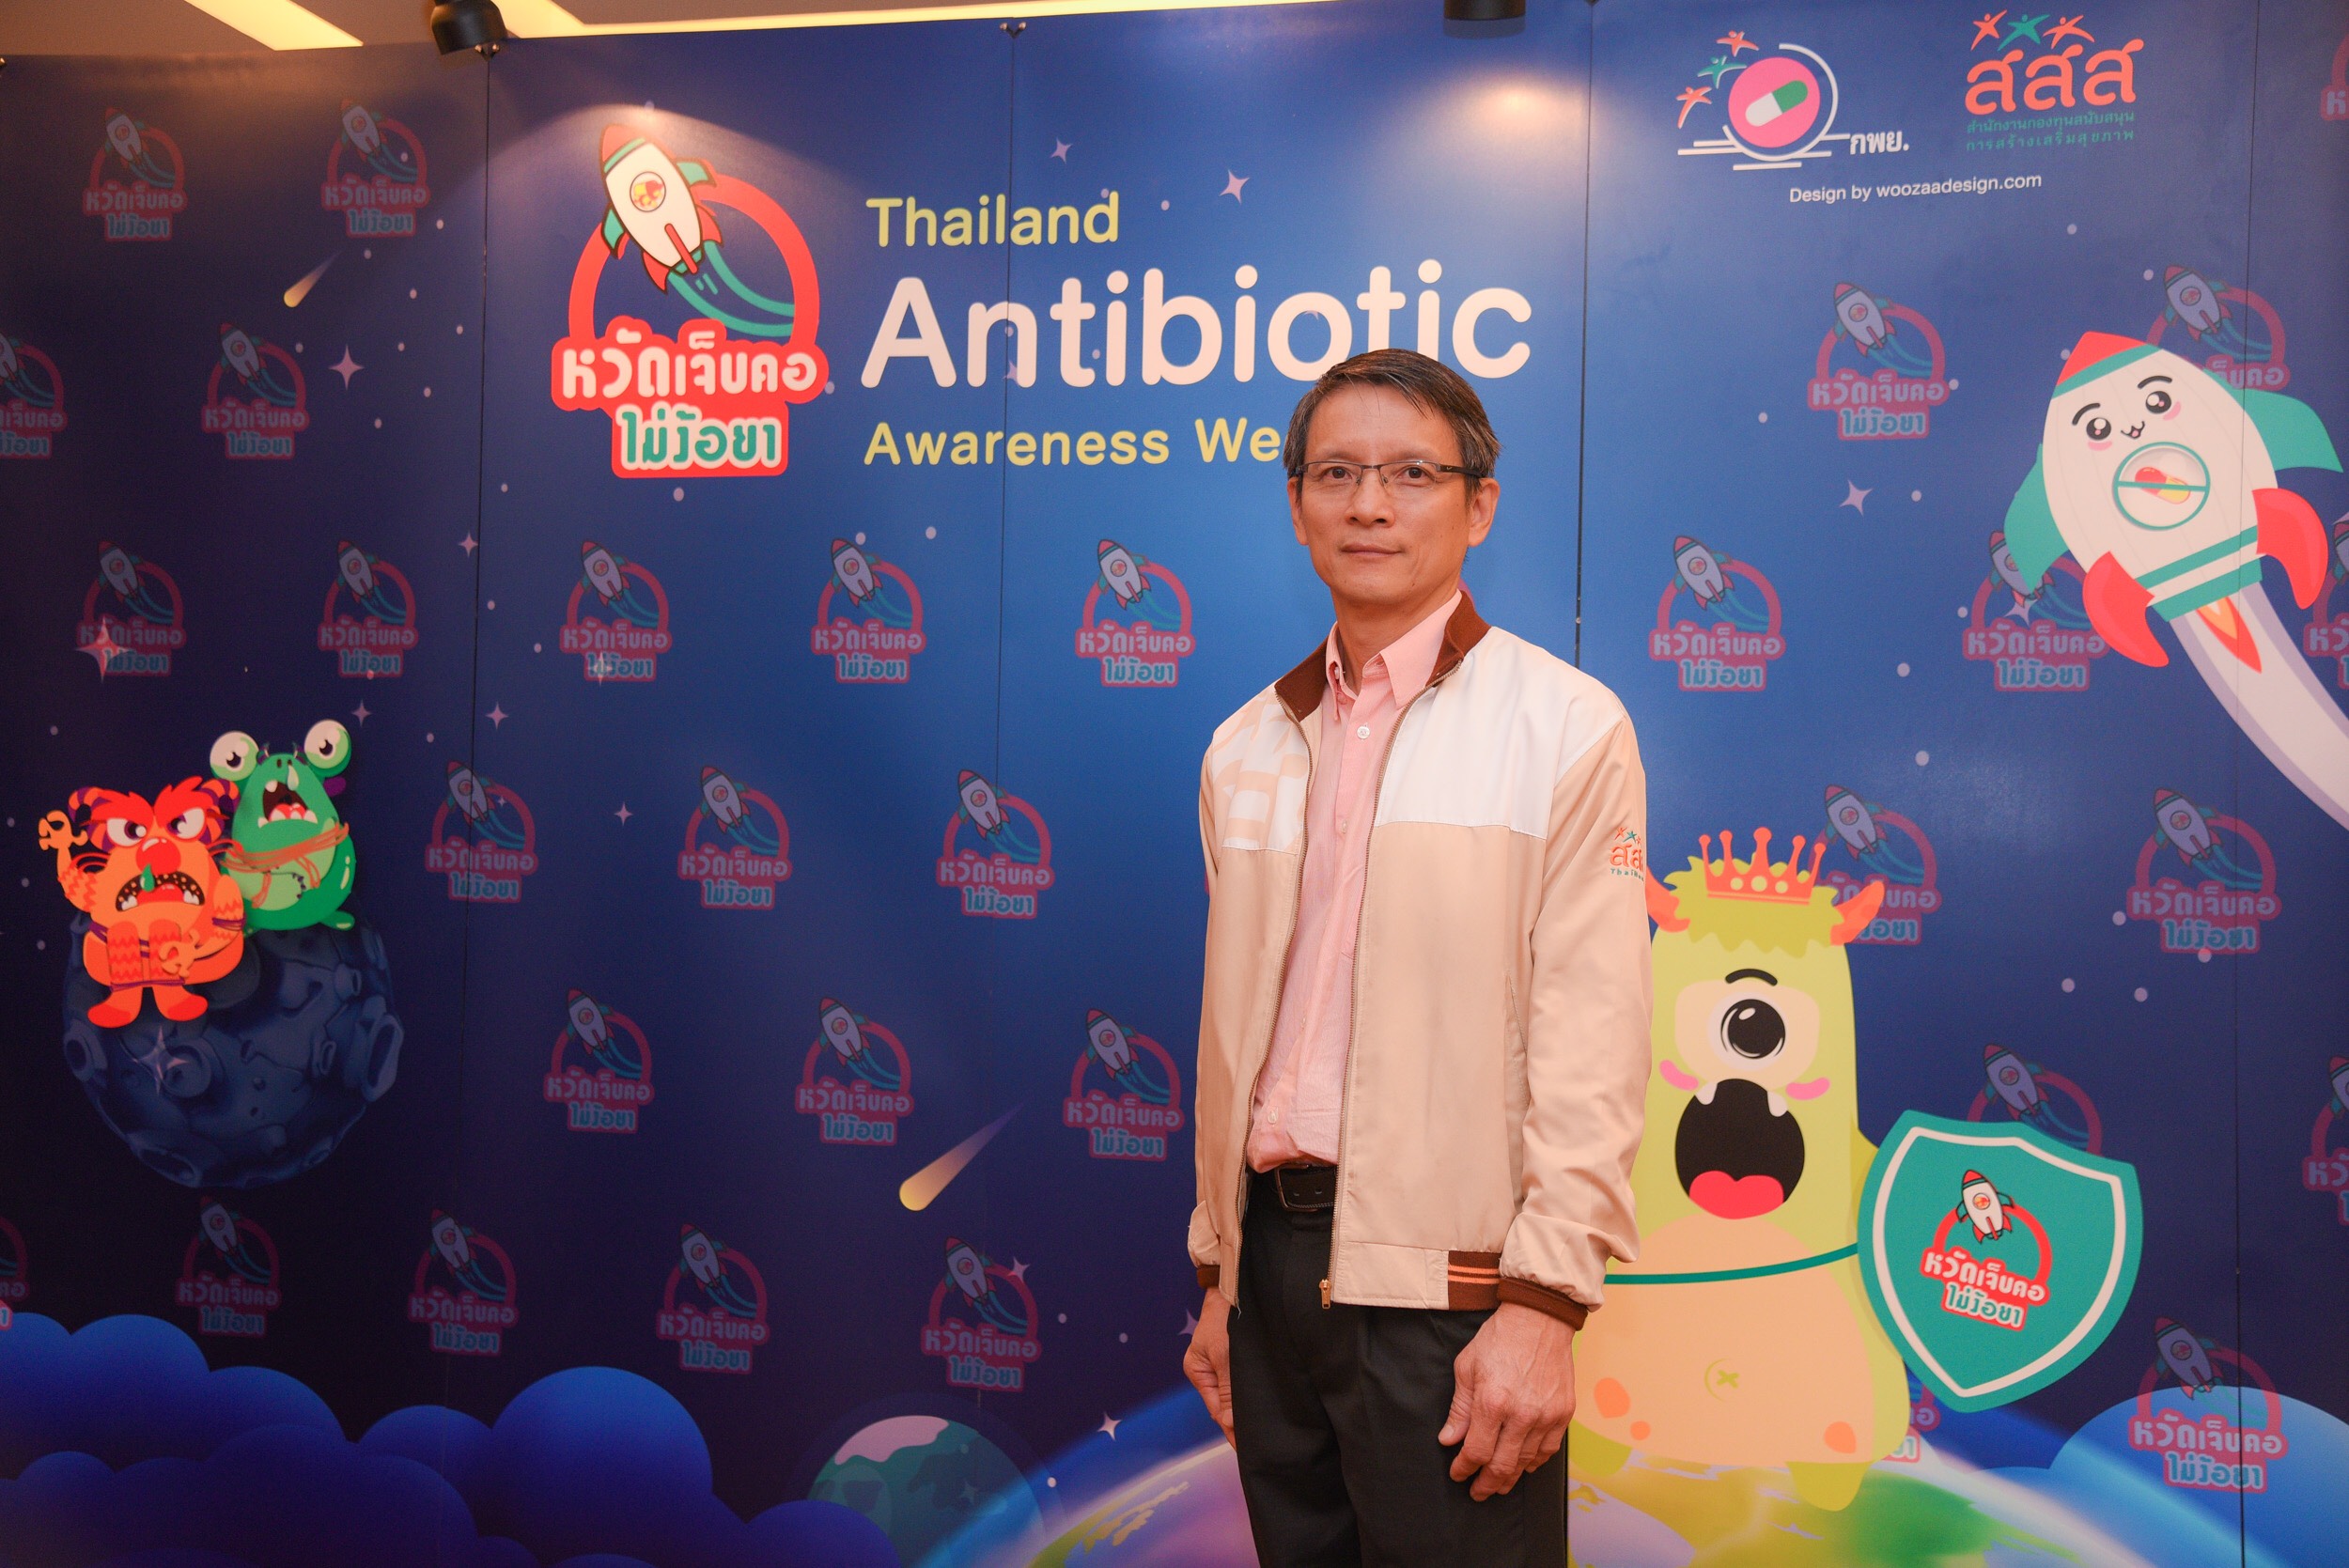 รณรงค์ใช้ยาปฏิชีวนะถูกวิธี ‘เป็นหวัดเจ็บคอไม่ง้อยา’ thaihealth